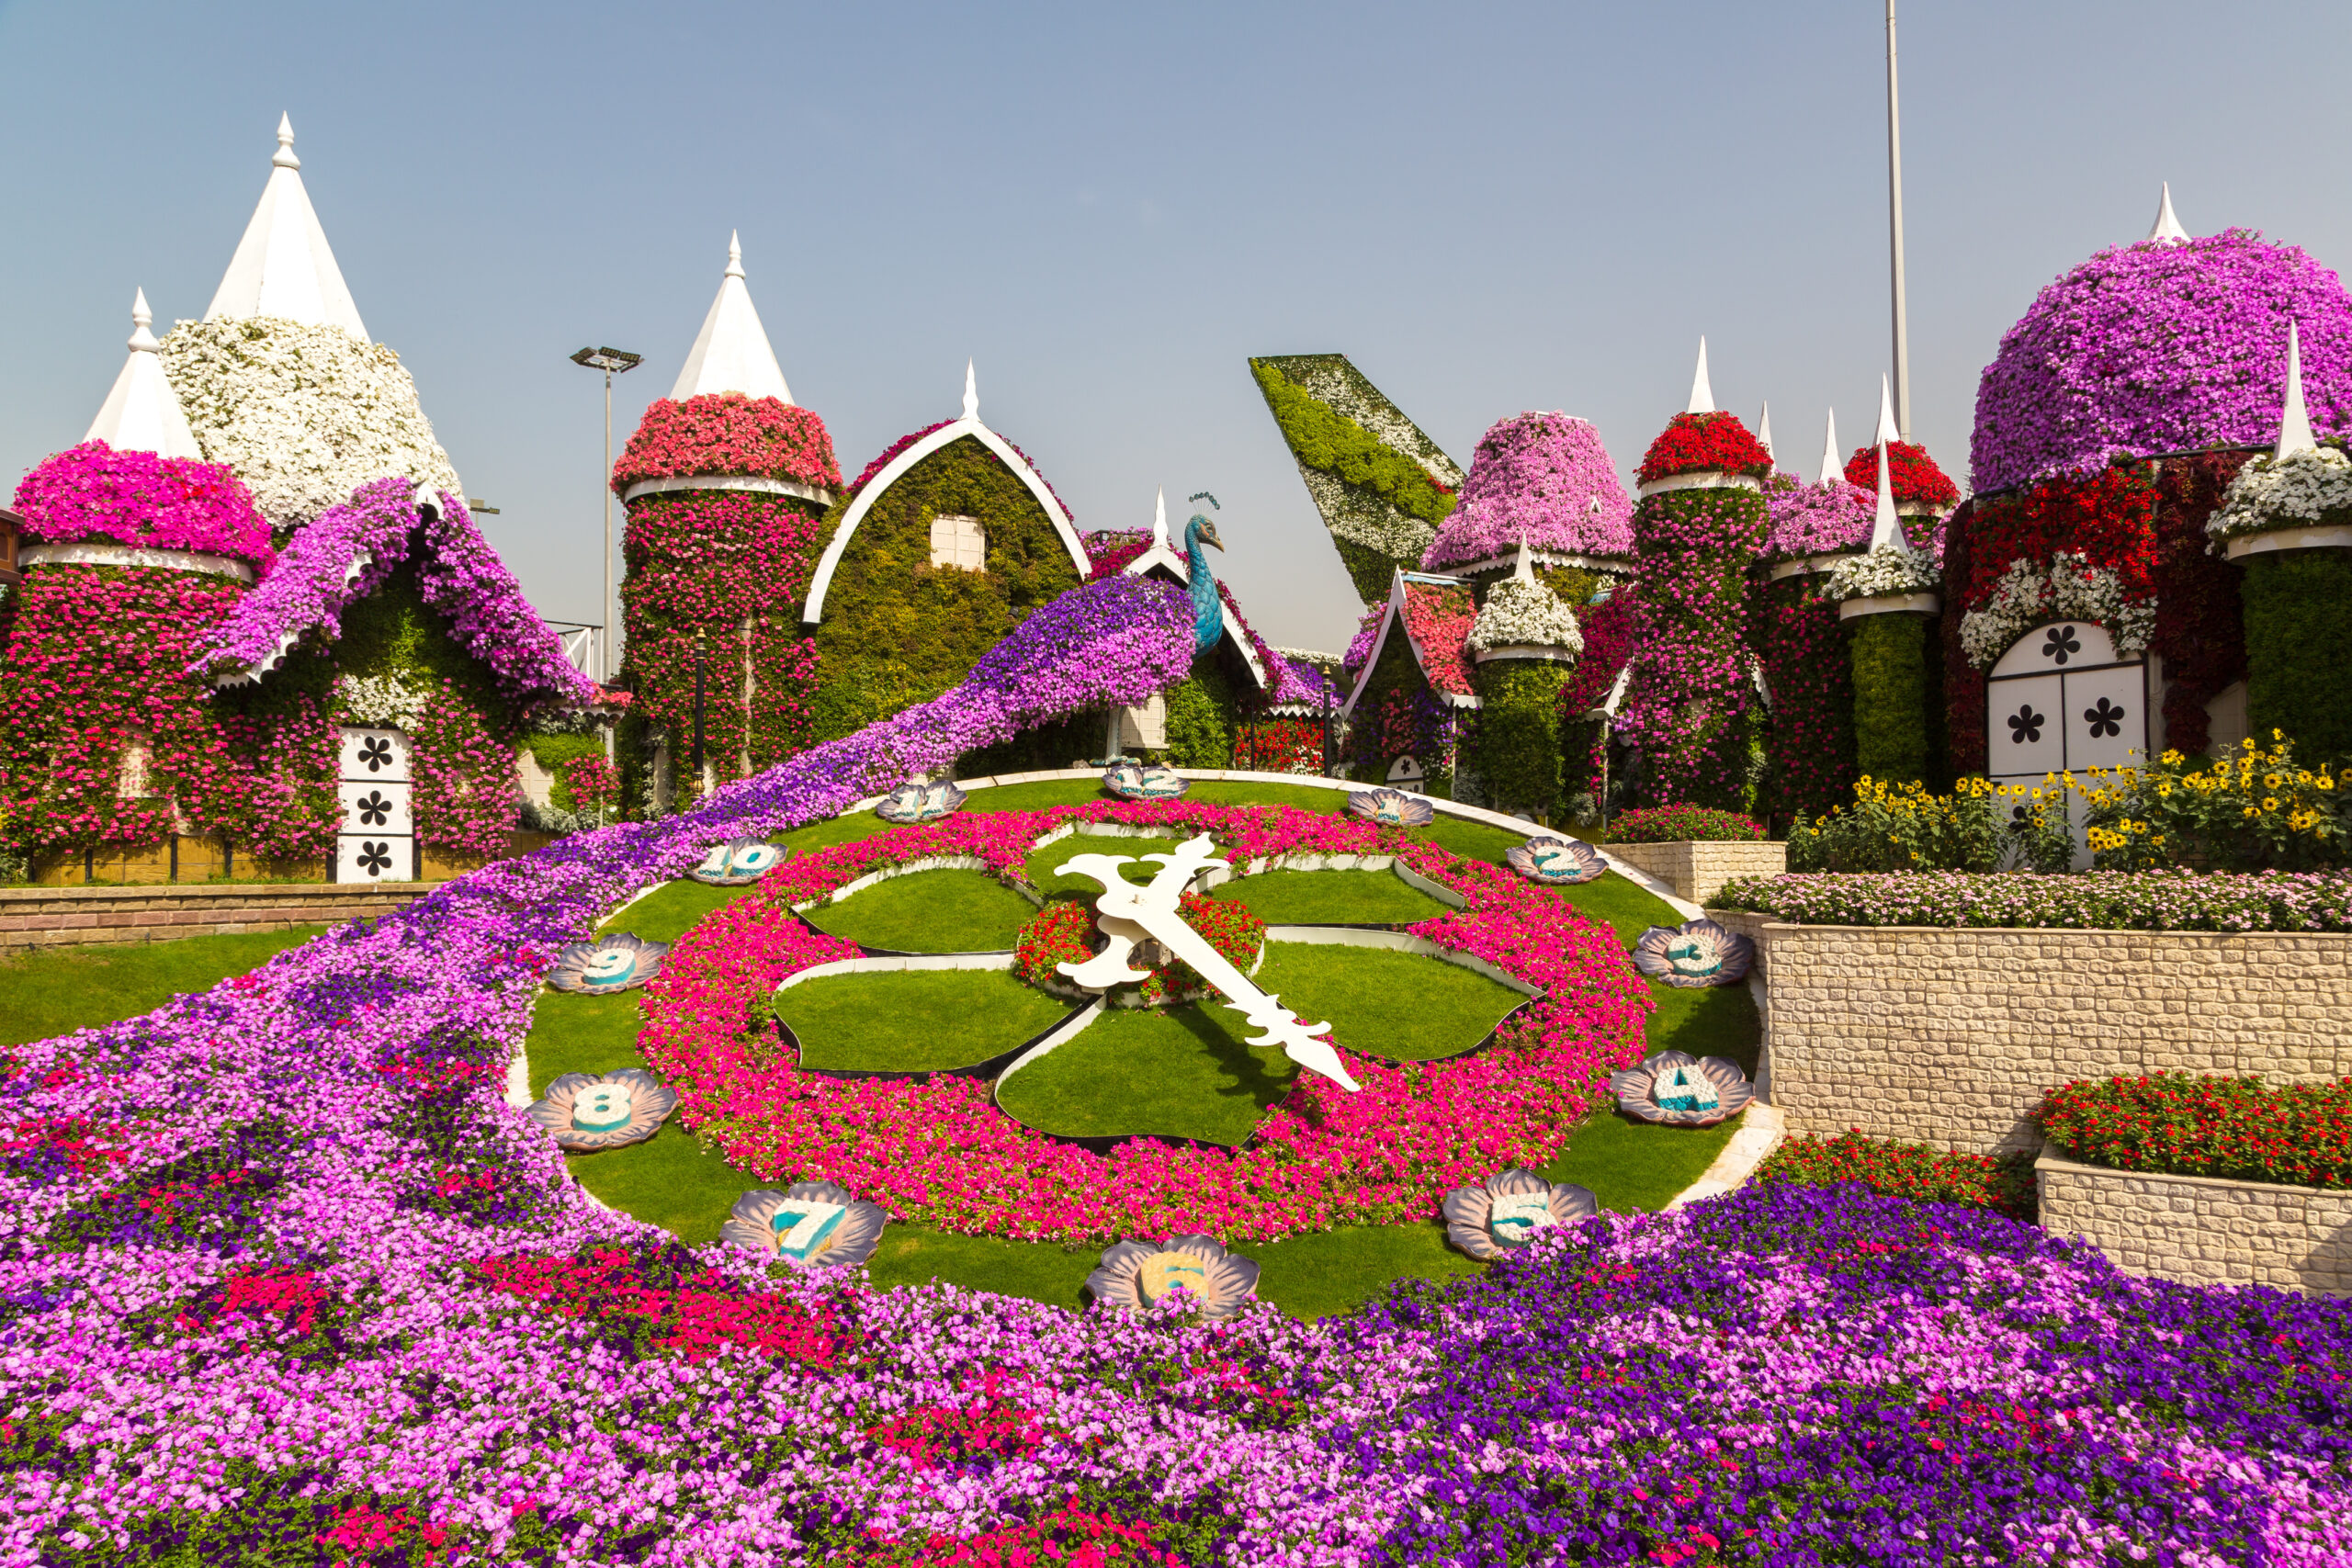 Dubai Miracle Garden - Floral clock